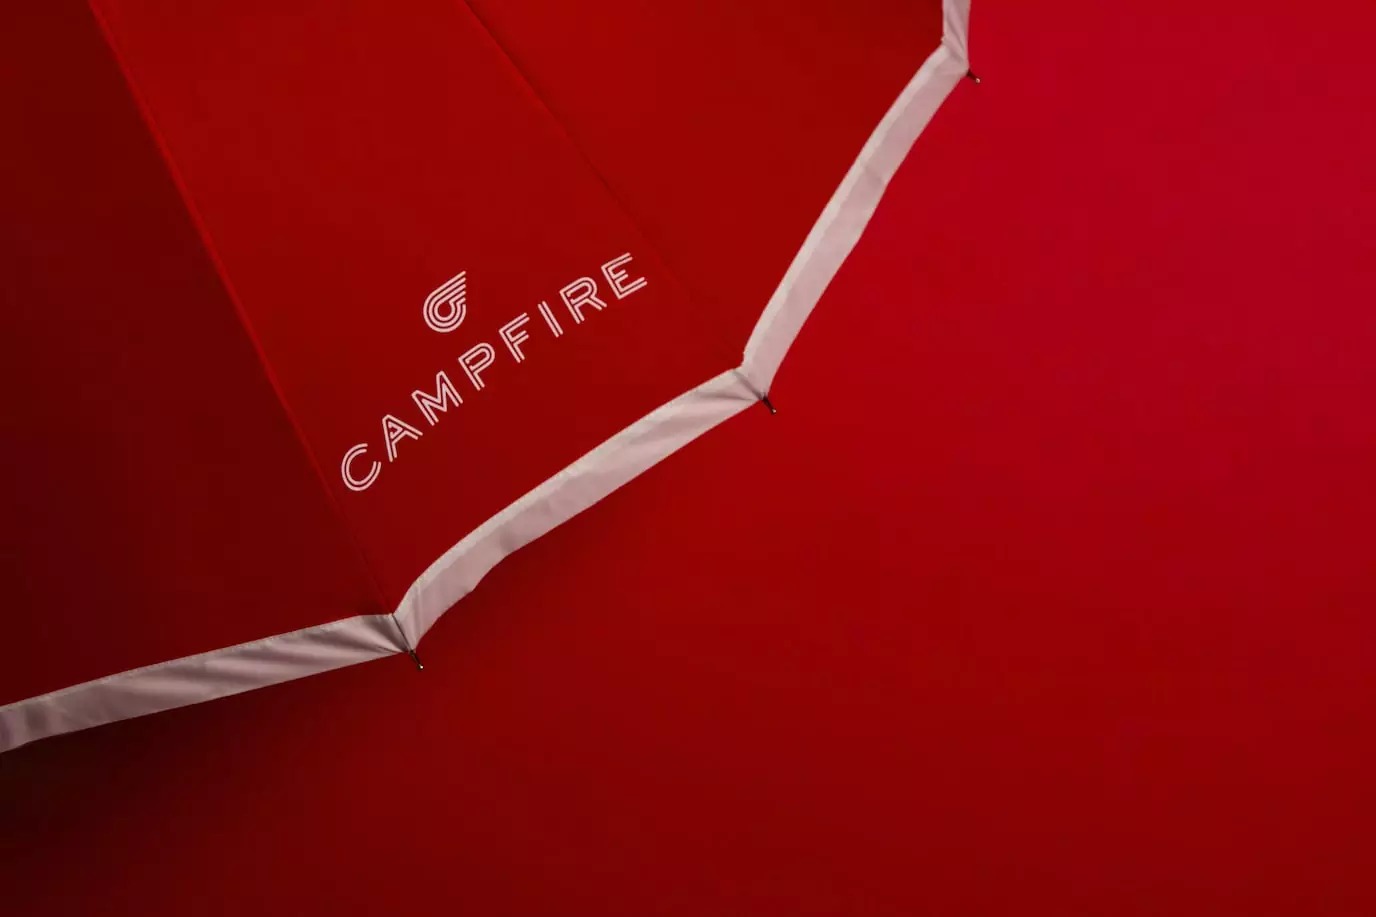 联合办公空间Campfire品牌视觉设计